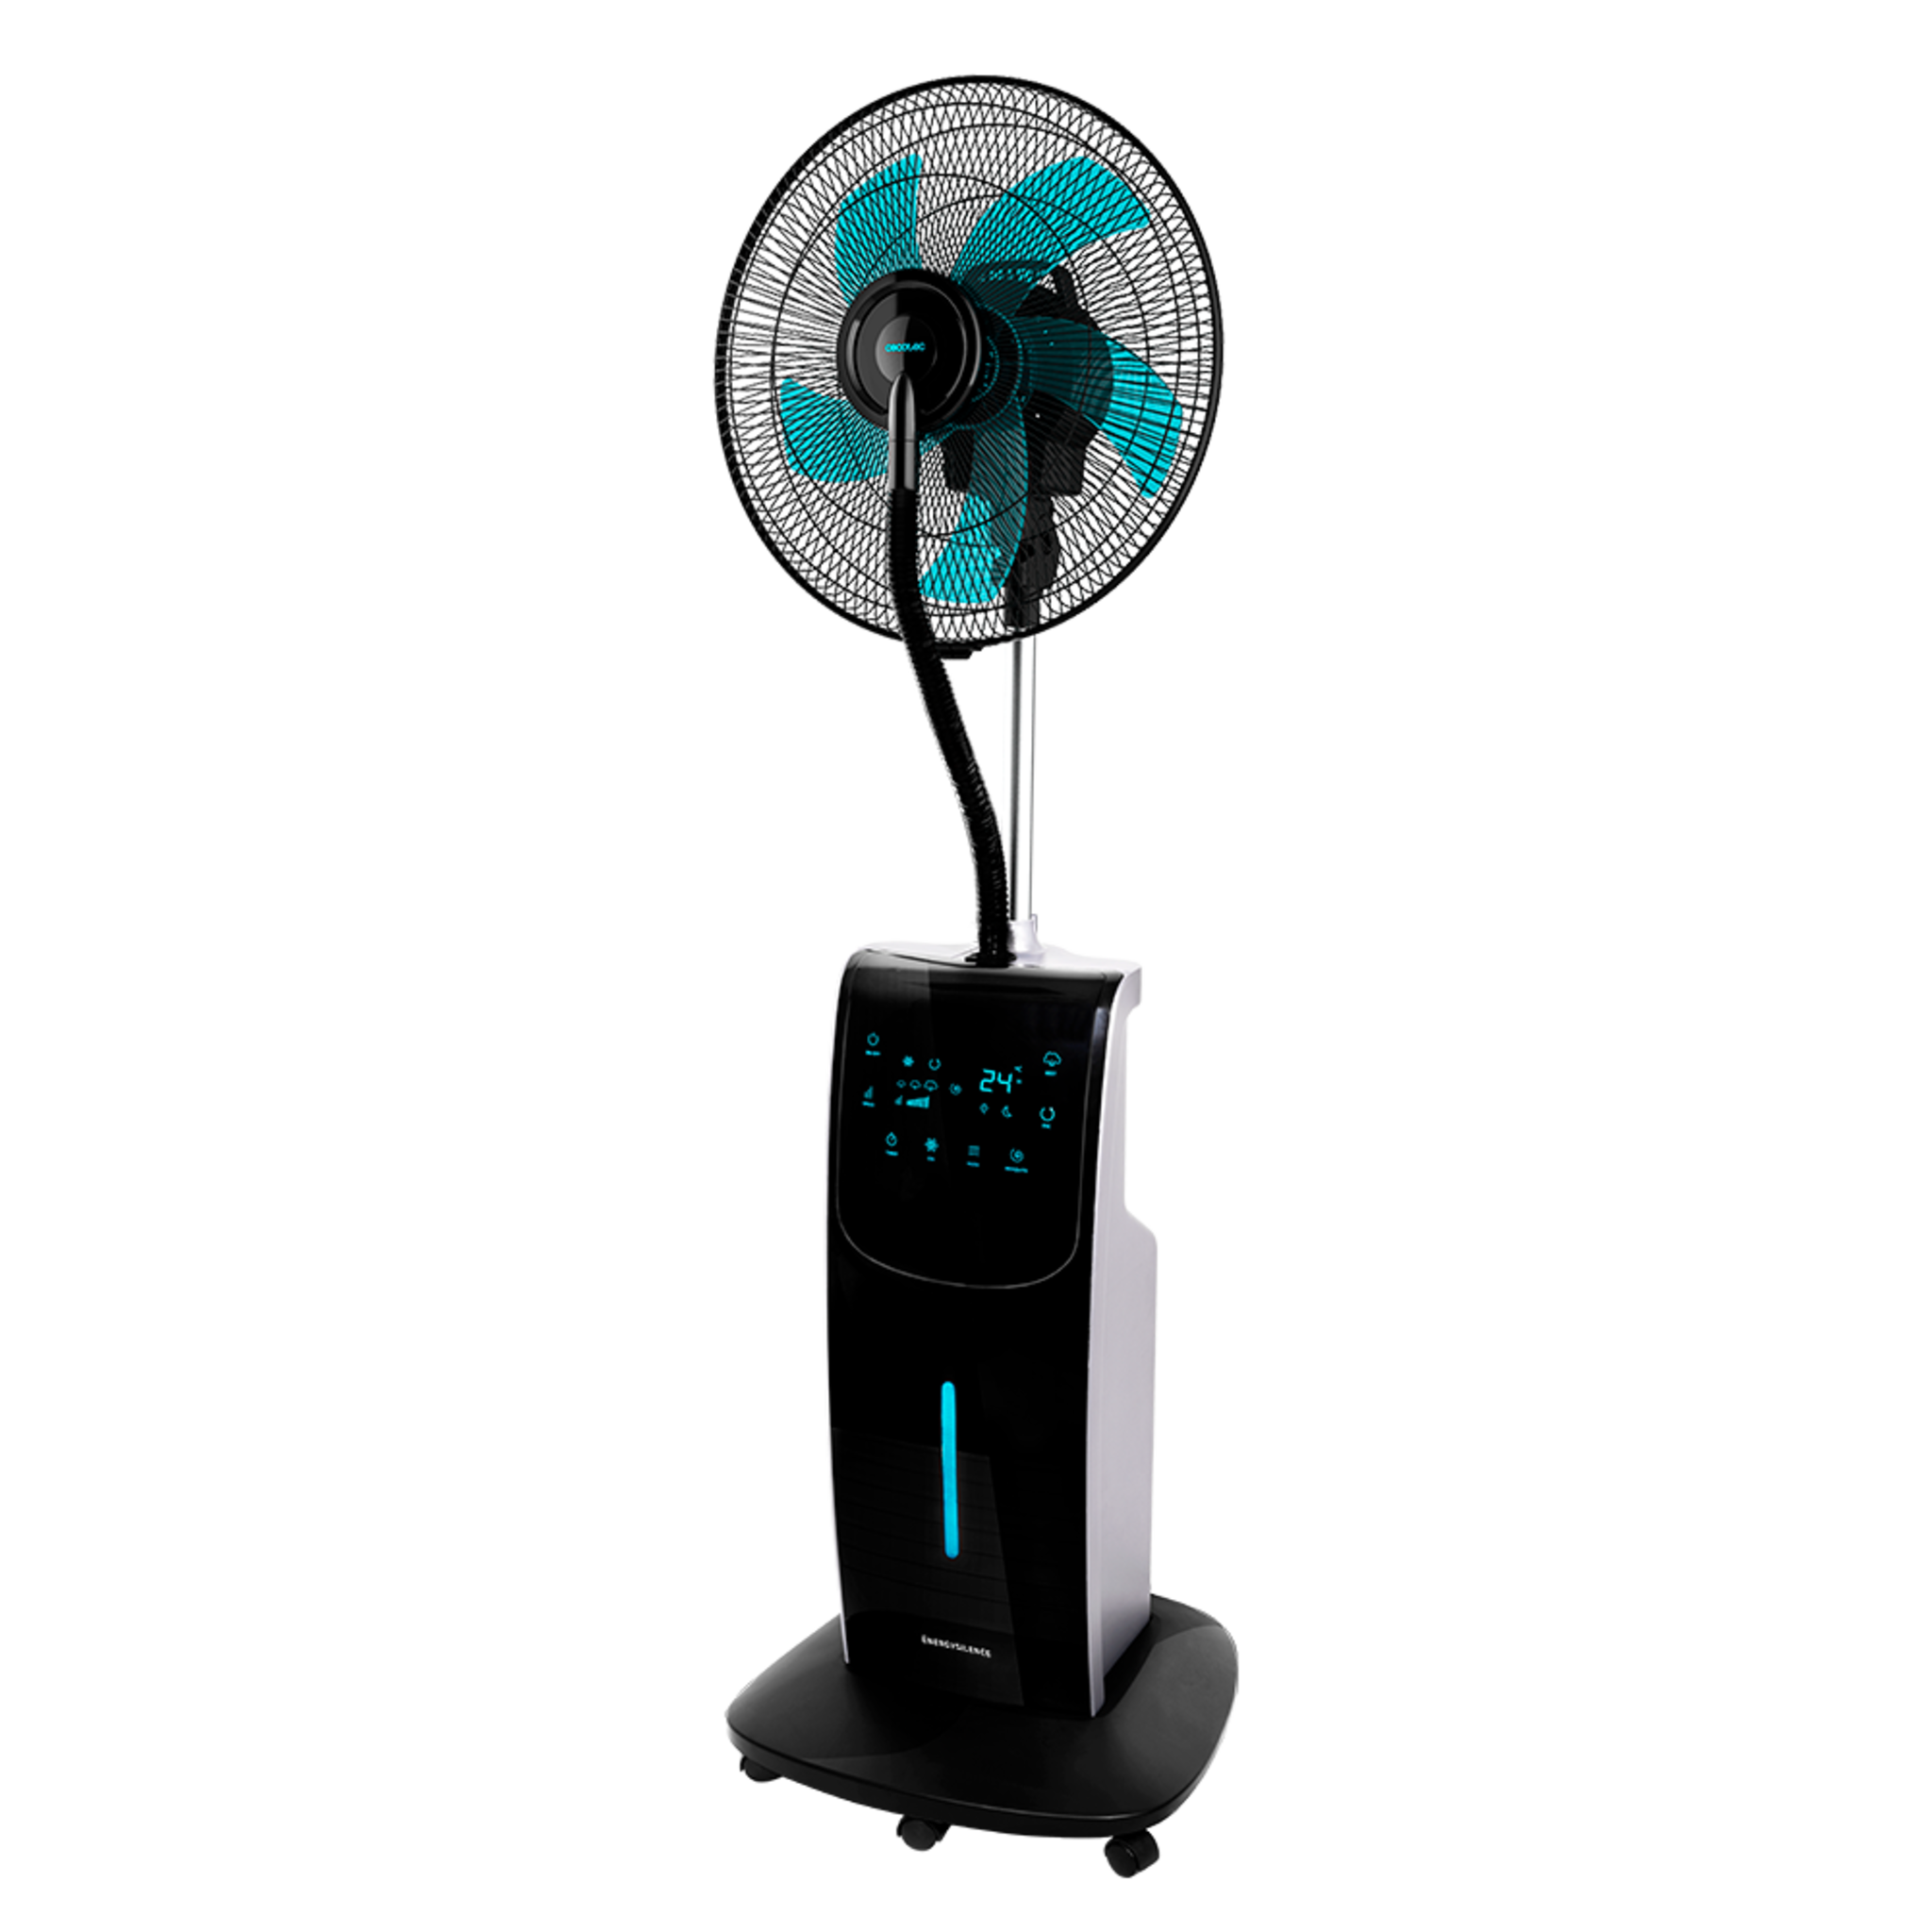 EnergySilence 790 FreshEssence Ionic ventilateur-nébuliseur numérique avec fonction Ionisante, diffuseur d’arômes et anti-moustiques, 5 pales, 90 W, 3 vitesses, minuterie 12 h et réservoir de 3,1 L.